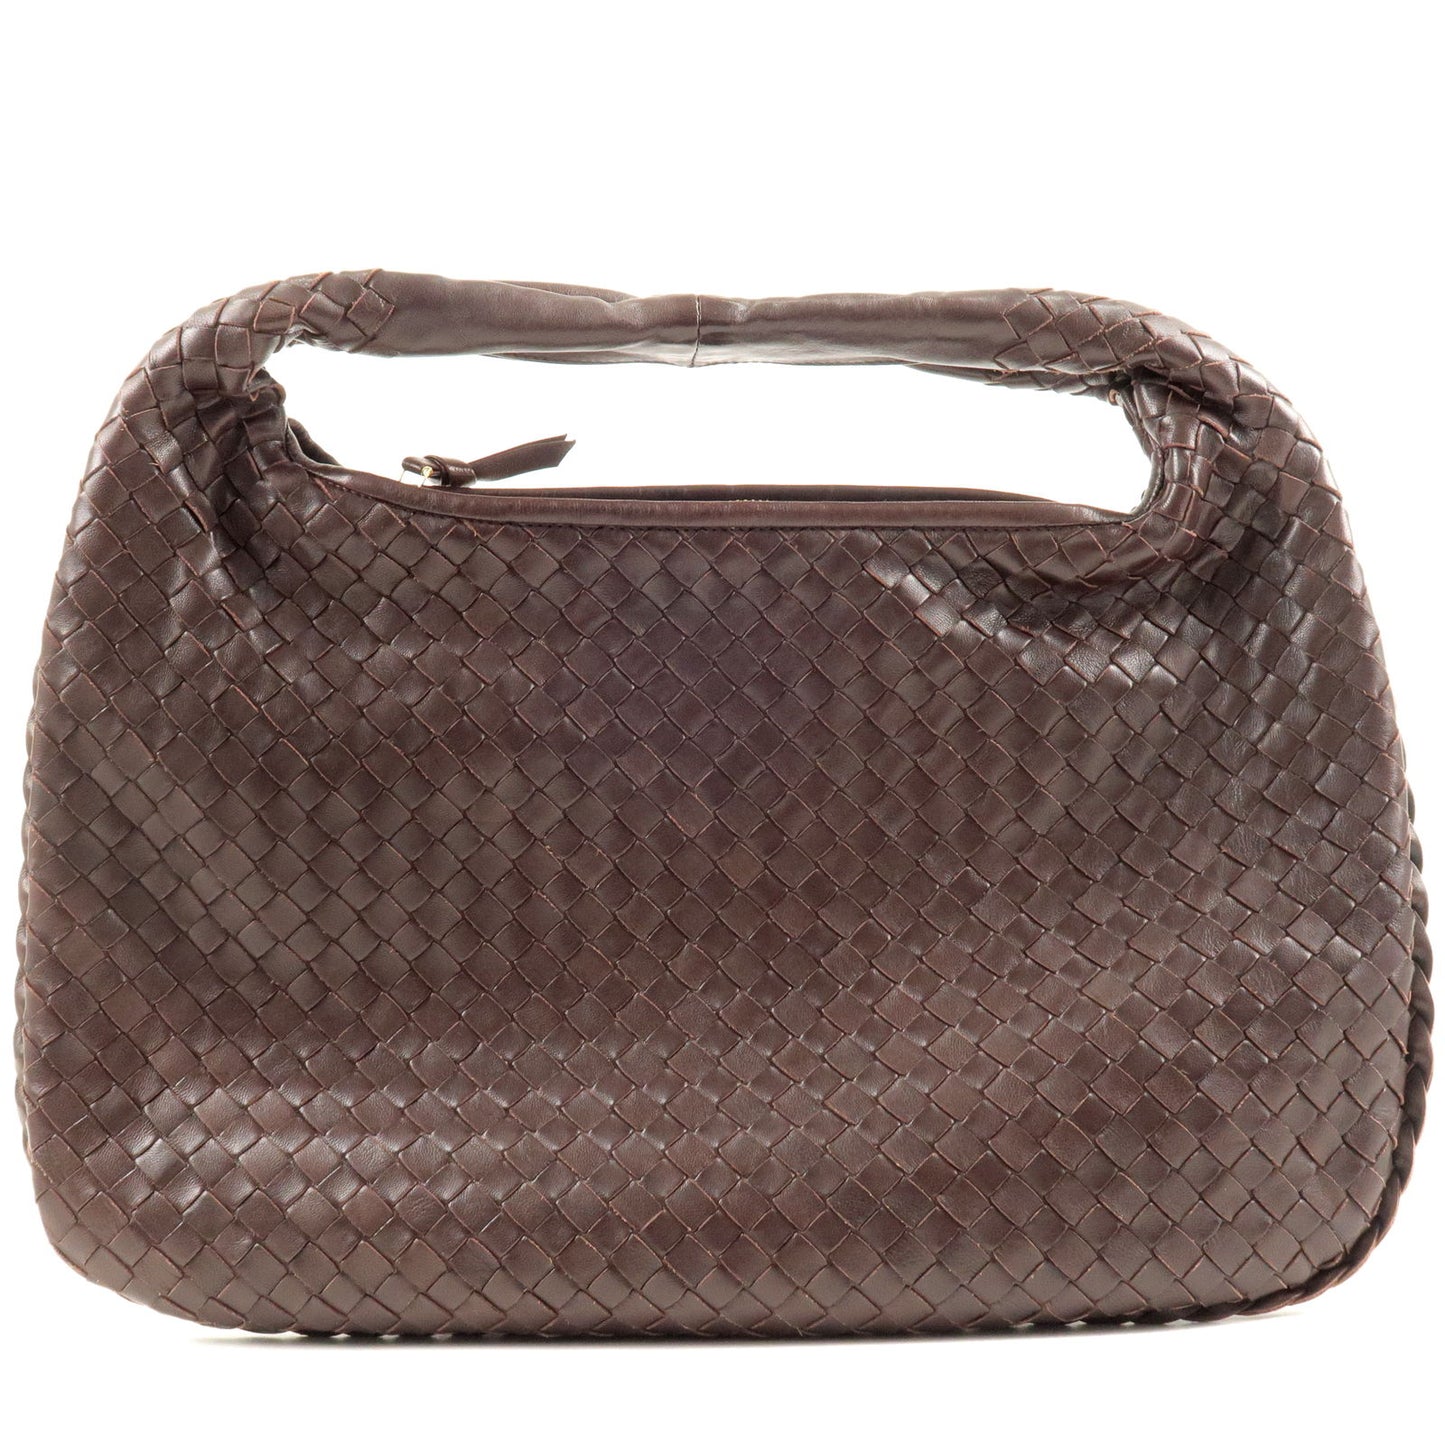 Bottega Veneta Intrecciato Leather Hobo Bag on SALE